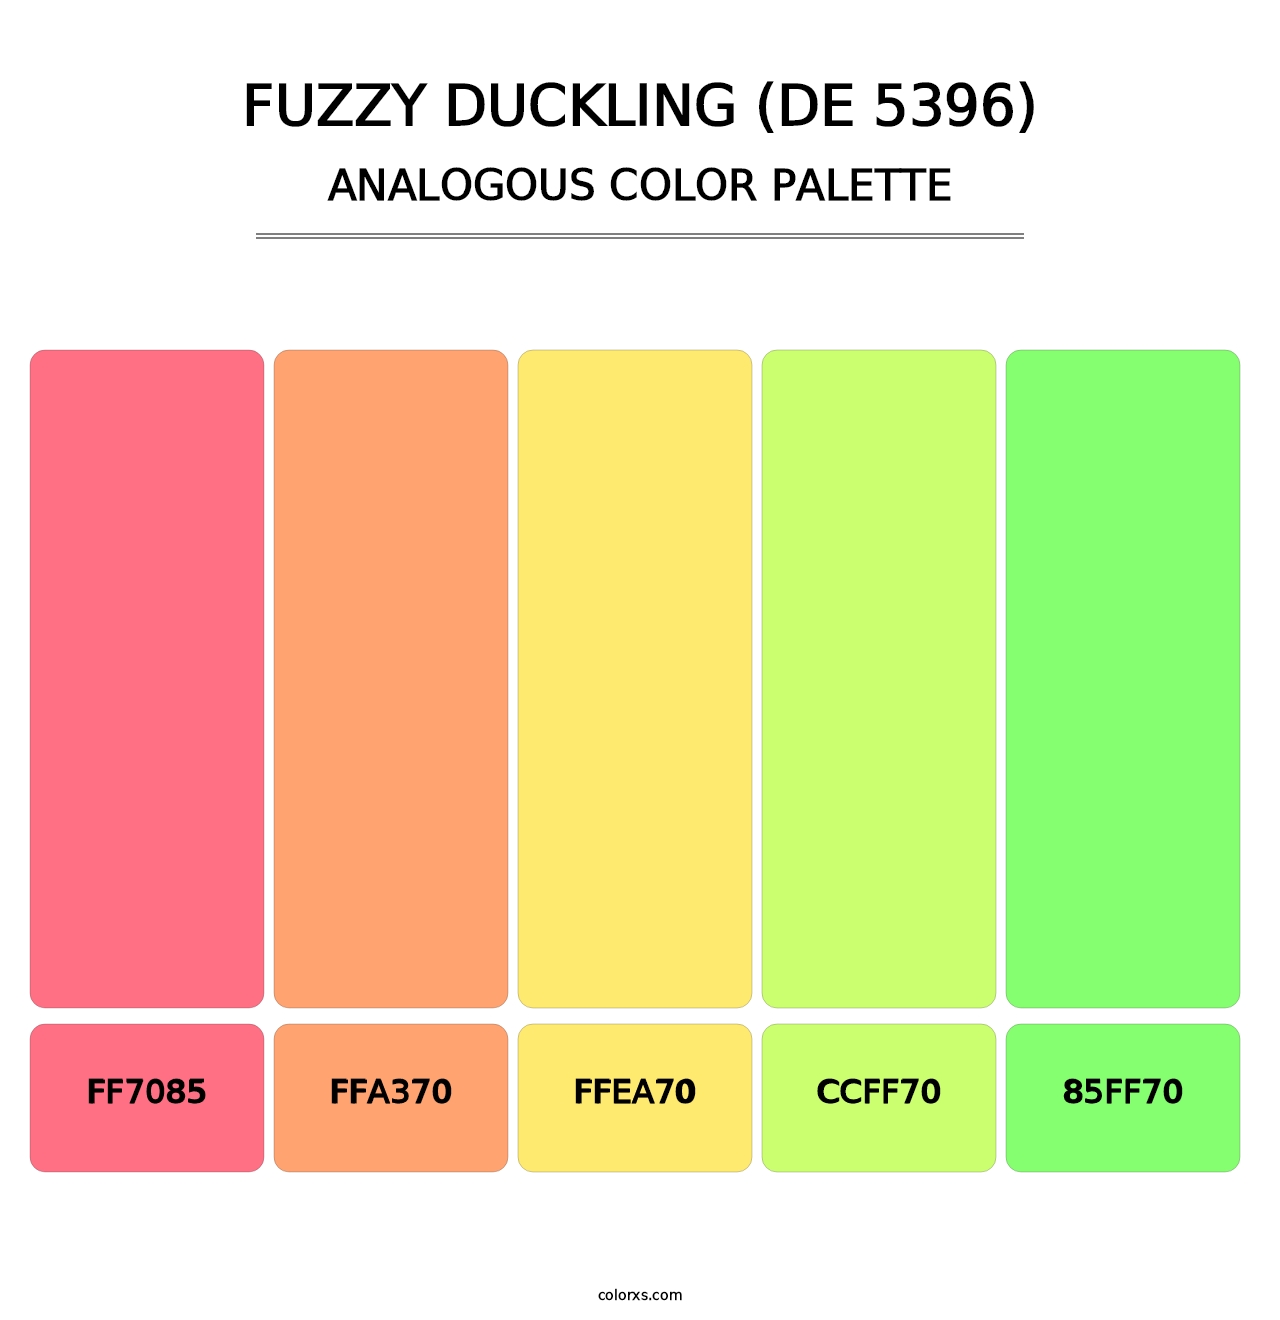 Fuzzy Duckling (DE 5396) - Analogous Color Palette